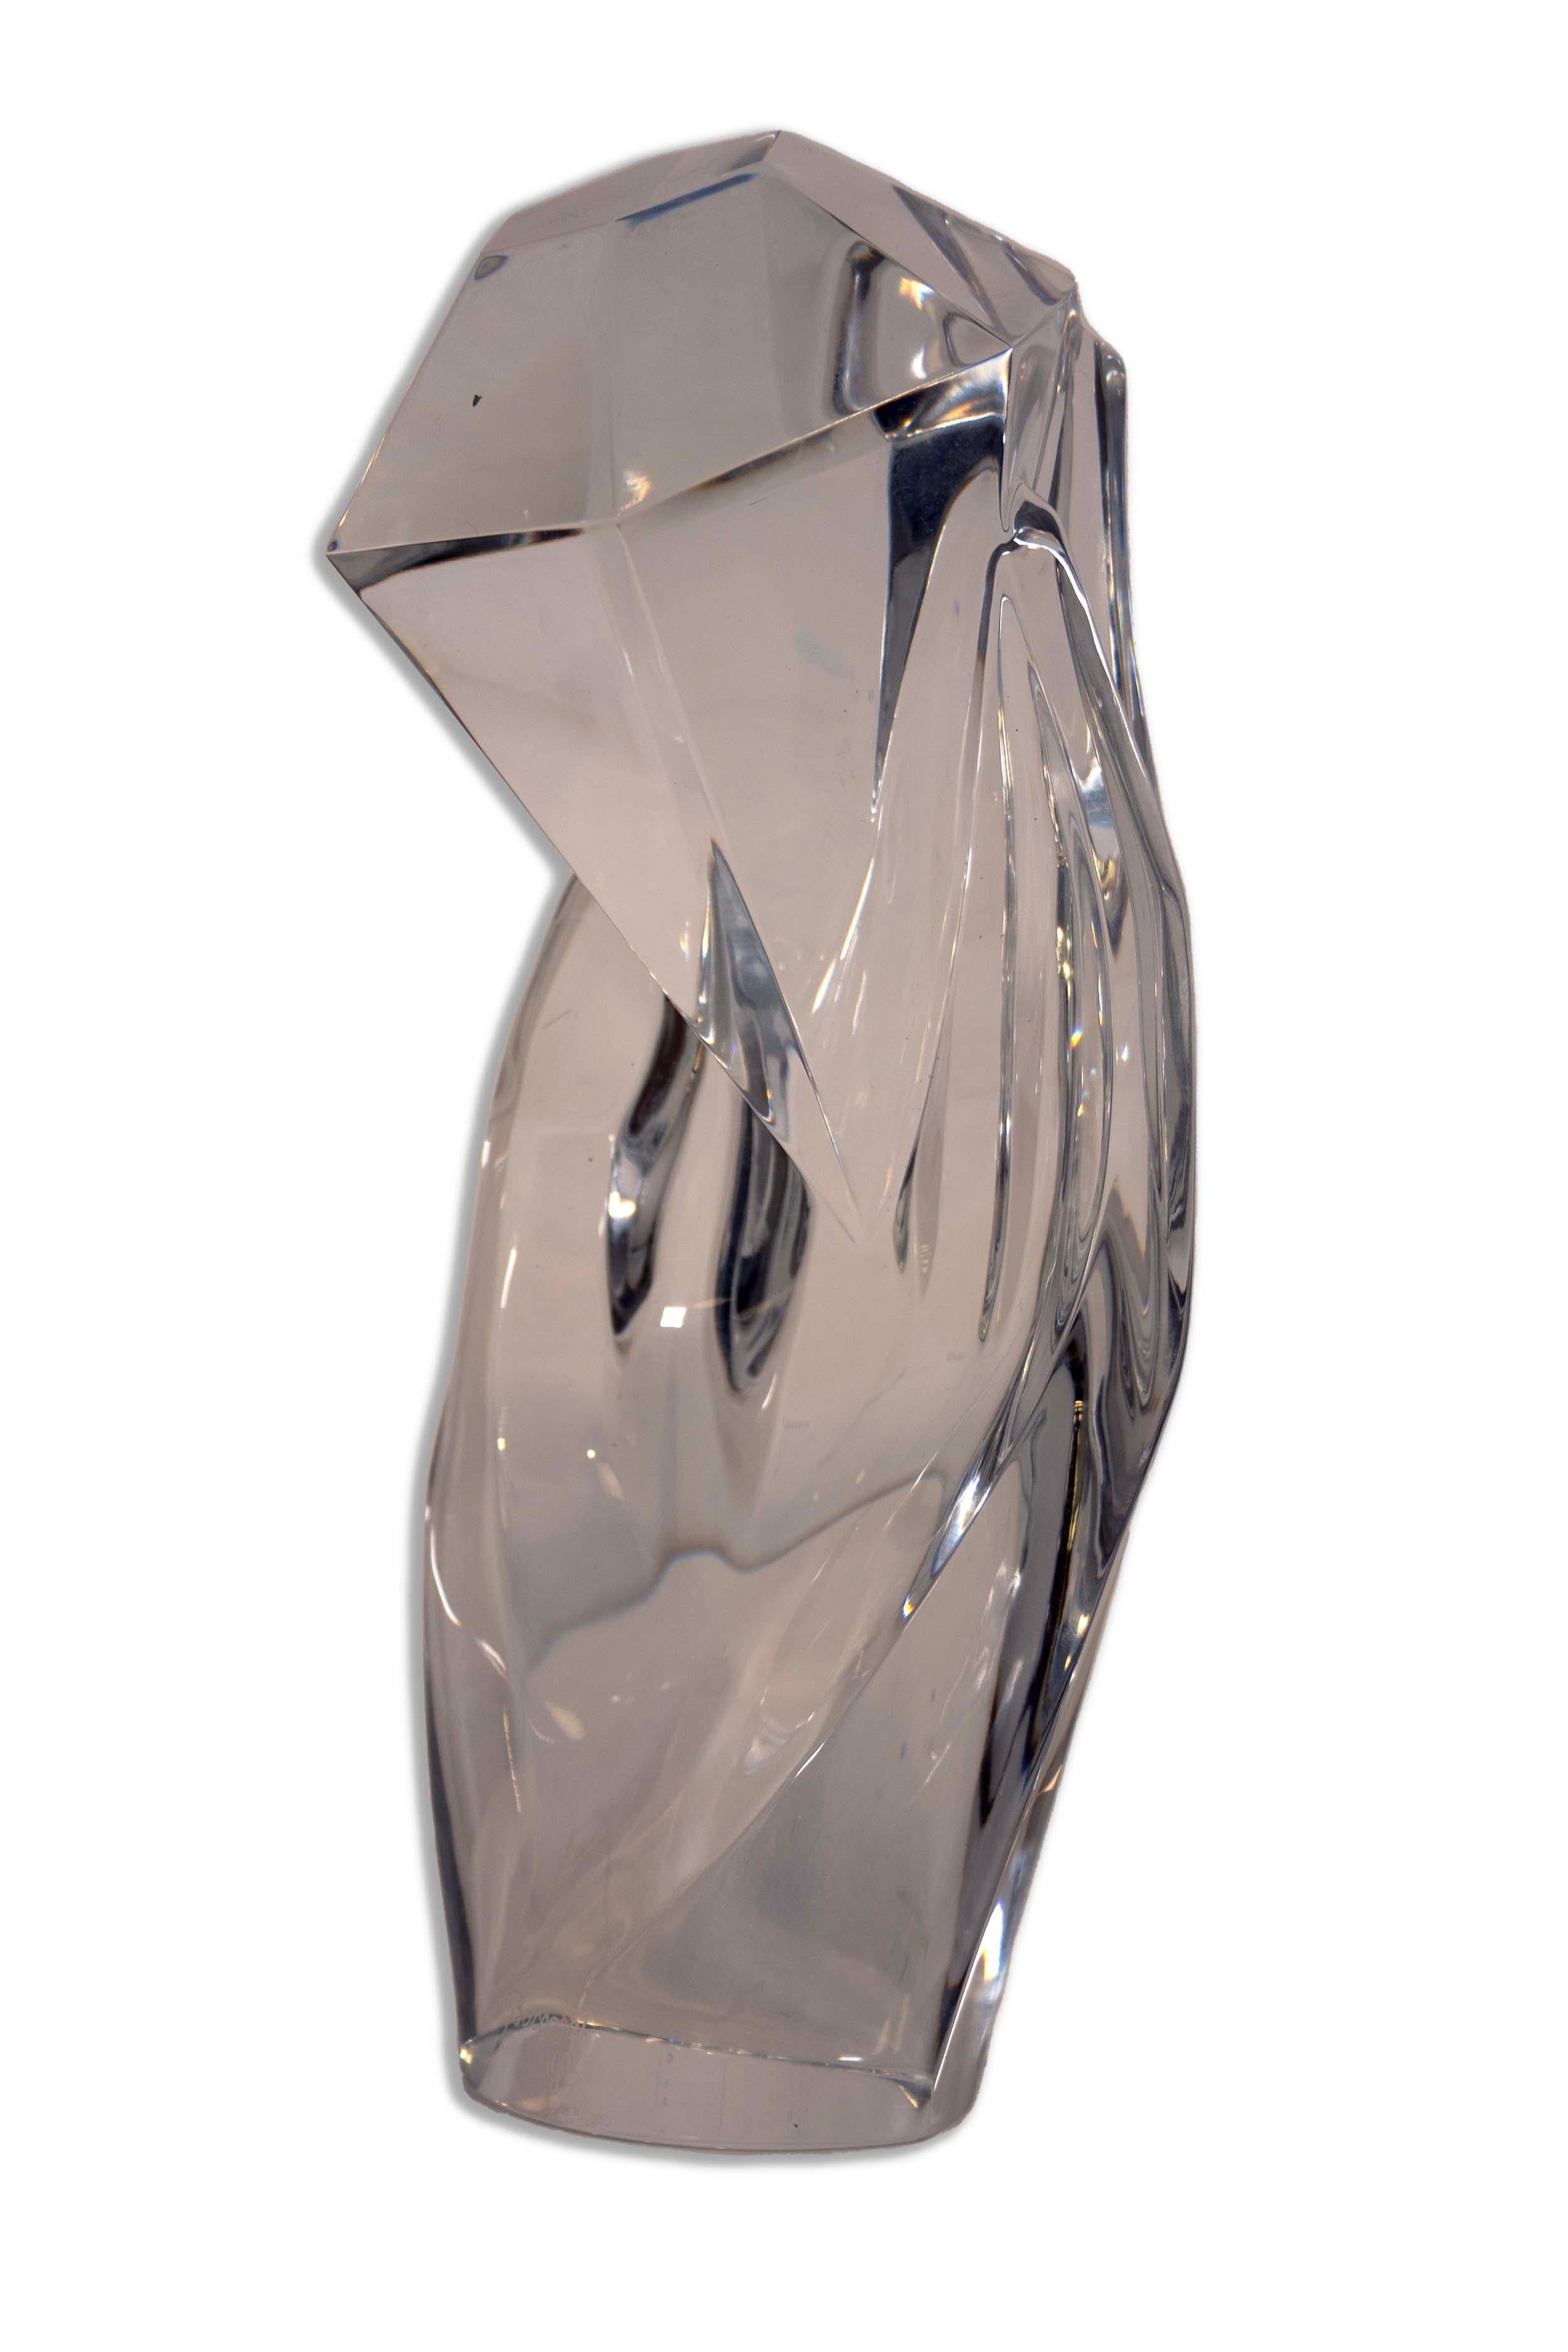 Die Baccarat Hand of Rigot Kristallvase ist ein luxuriöses und skulpturales Meisterwerk, das in Frankreich hergestellt wird. Dieses exquisite Stück ist ein Symbol für Eleganz und zeigt die ikonische Handwerkskunst von Baccarat mit seiner glatten und